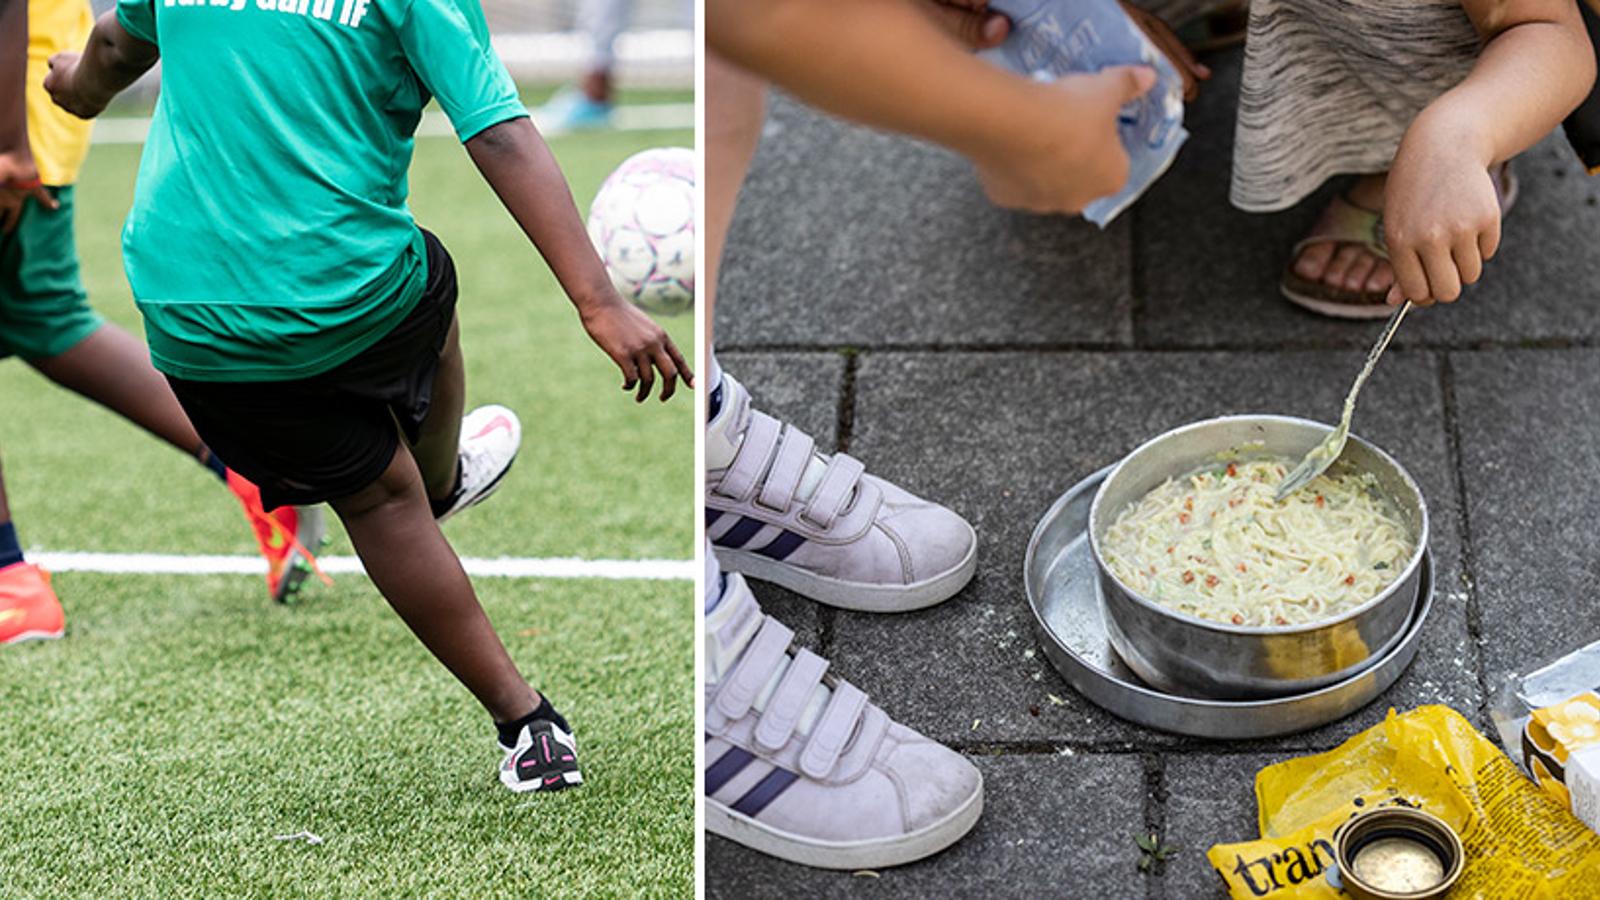 Till vänster: En person som sparkar en fotboll. Till höger: Barn som kokar soppa.